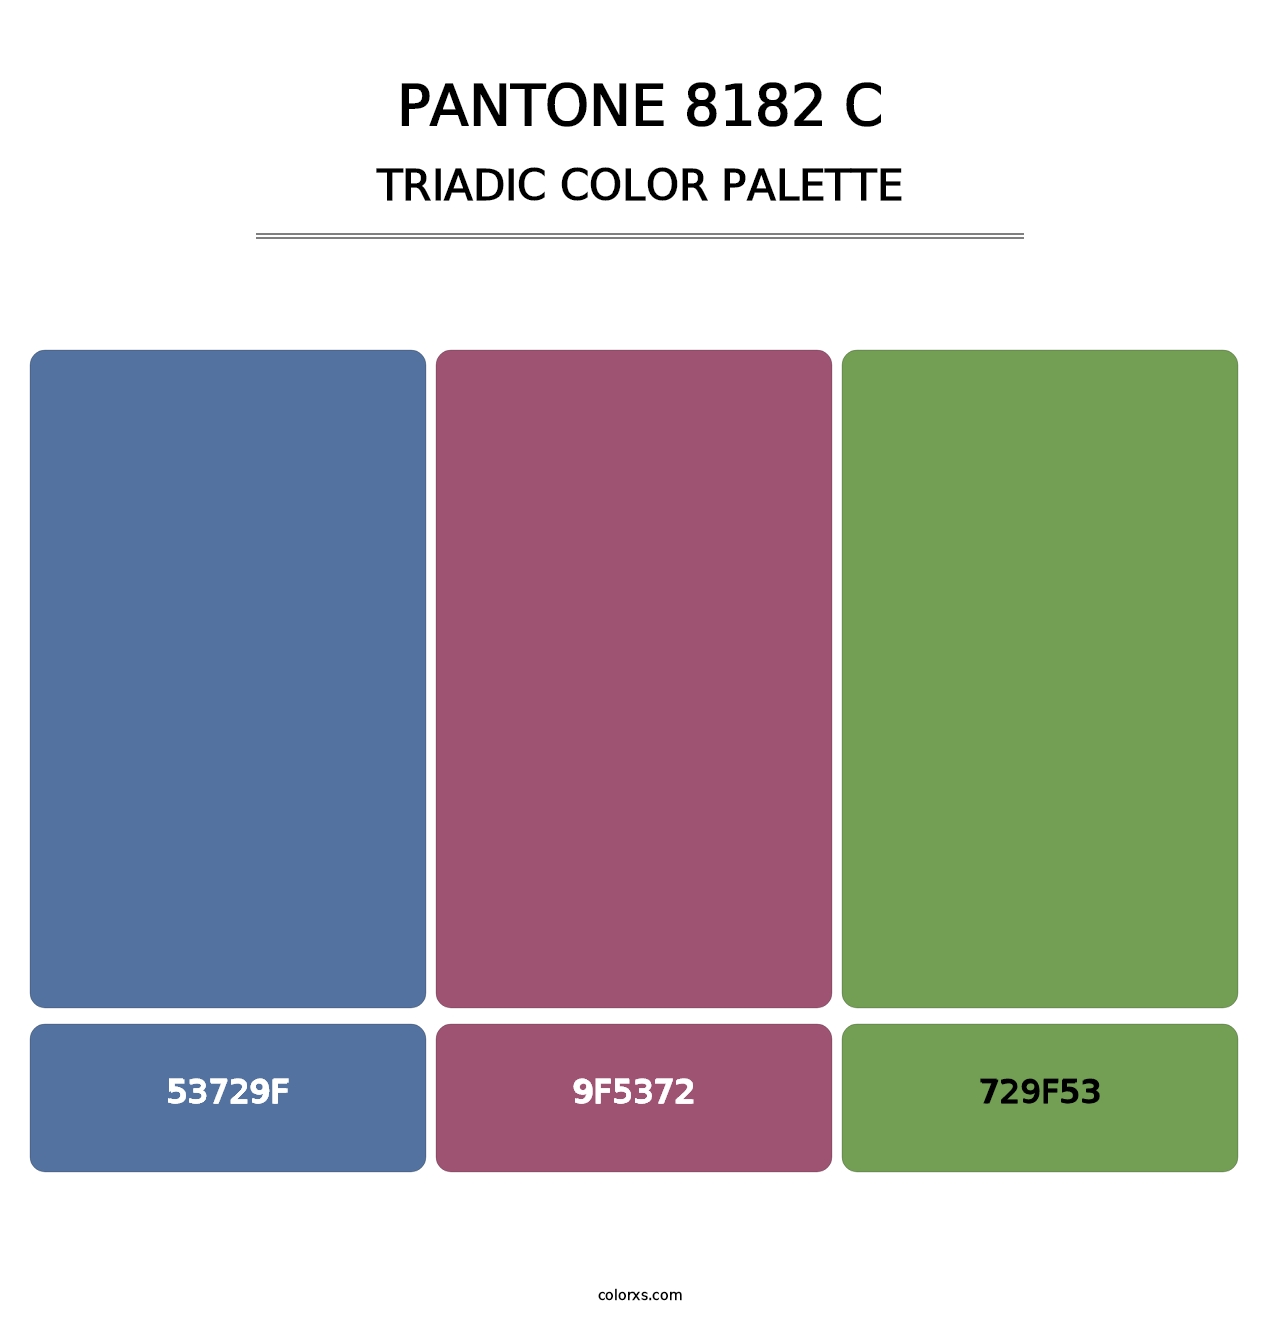 PANTONE 8182 C - Triadic Color Palette